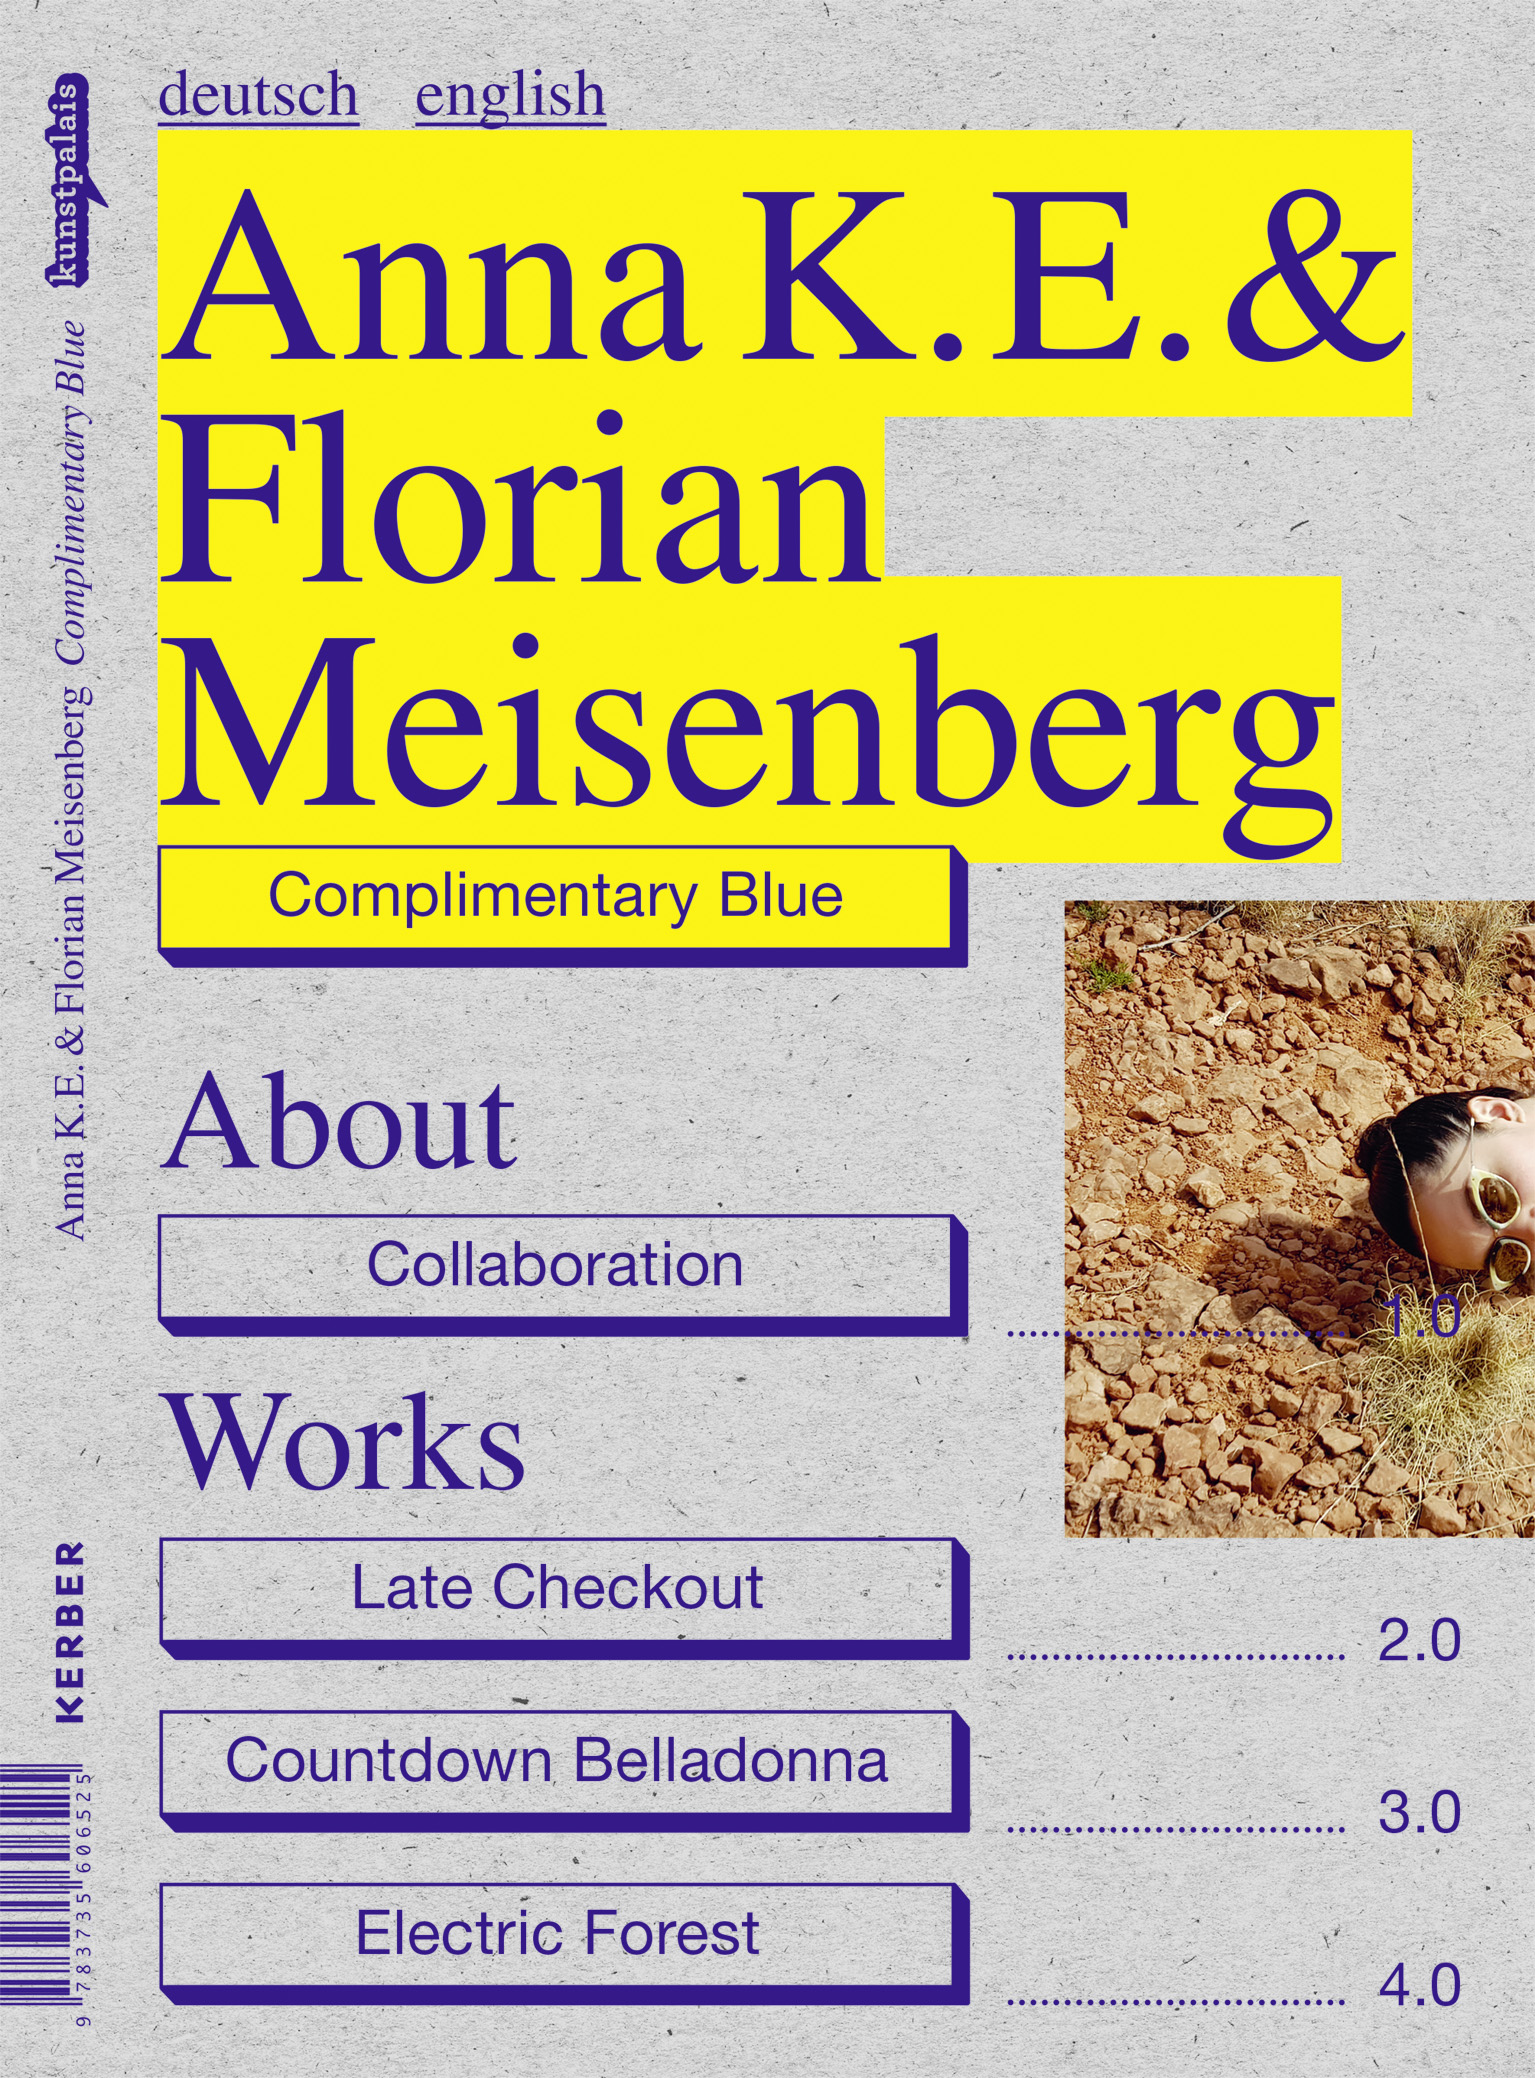 Bild des Katalogs zur Ausstellung "Anna K.E. & Florian Meisenberg. Complimentary Blue"